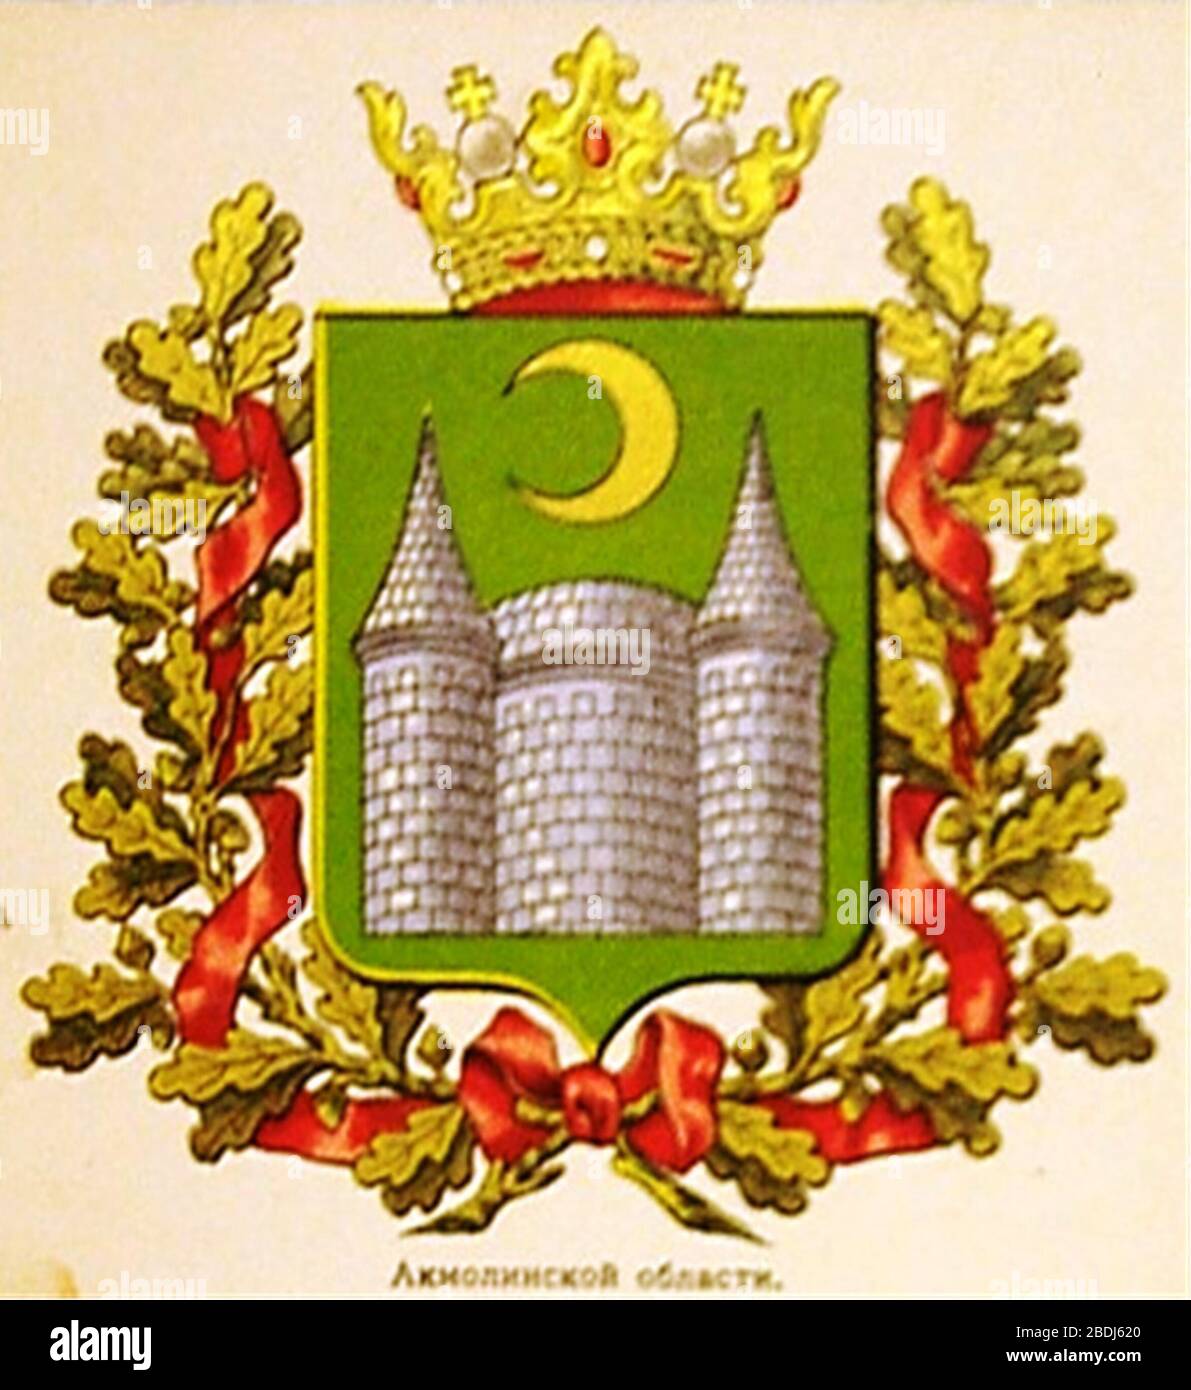 Герб Акмолинской области Российской империи